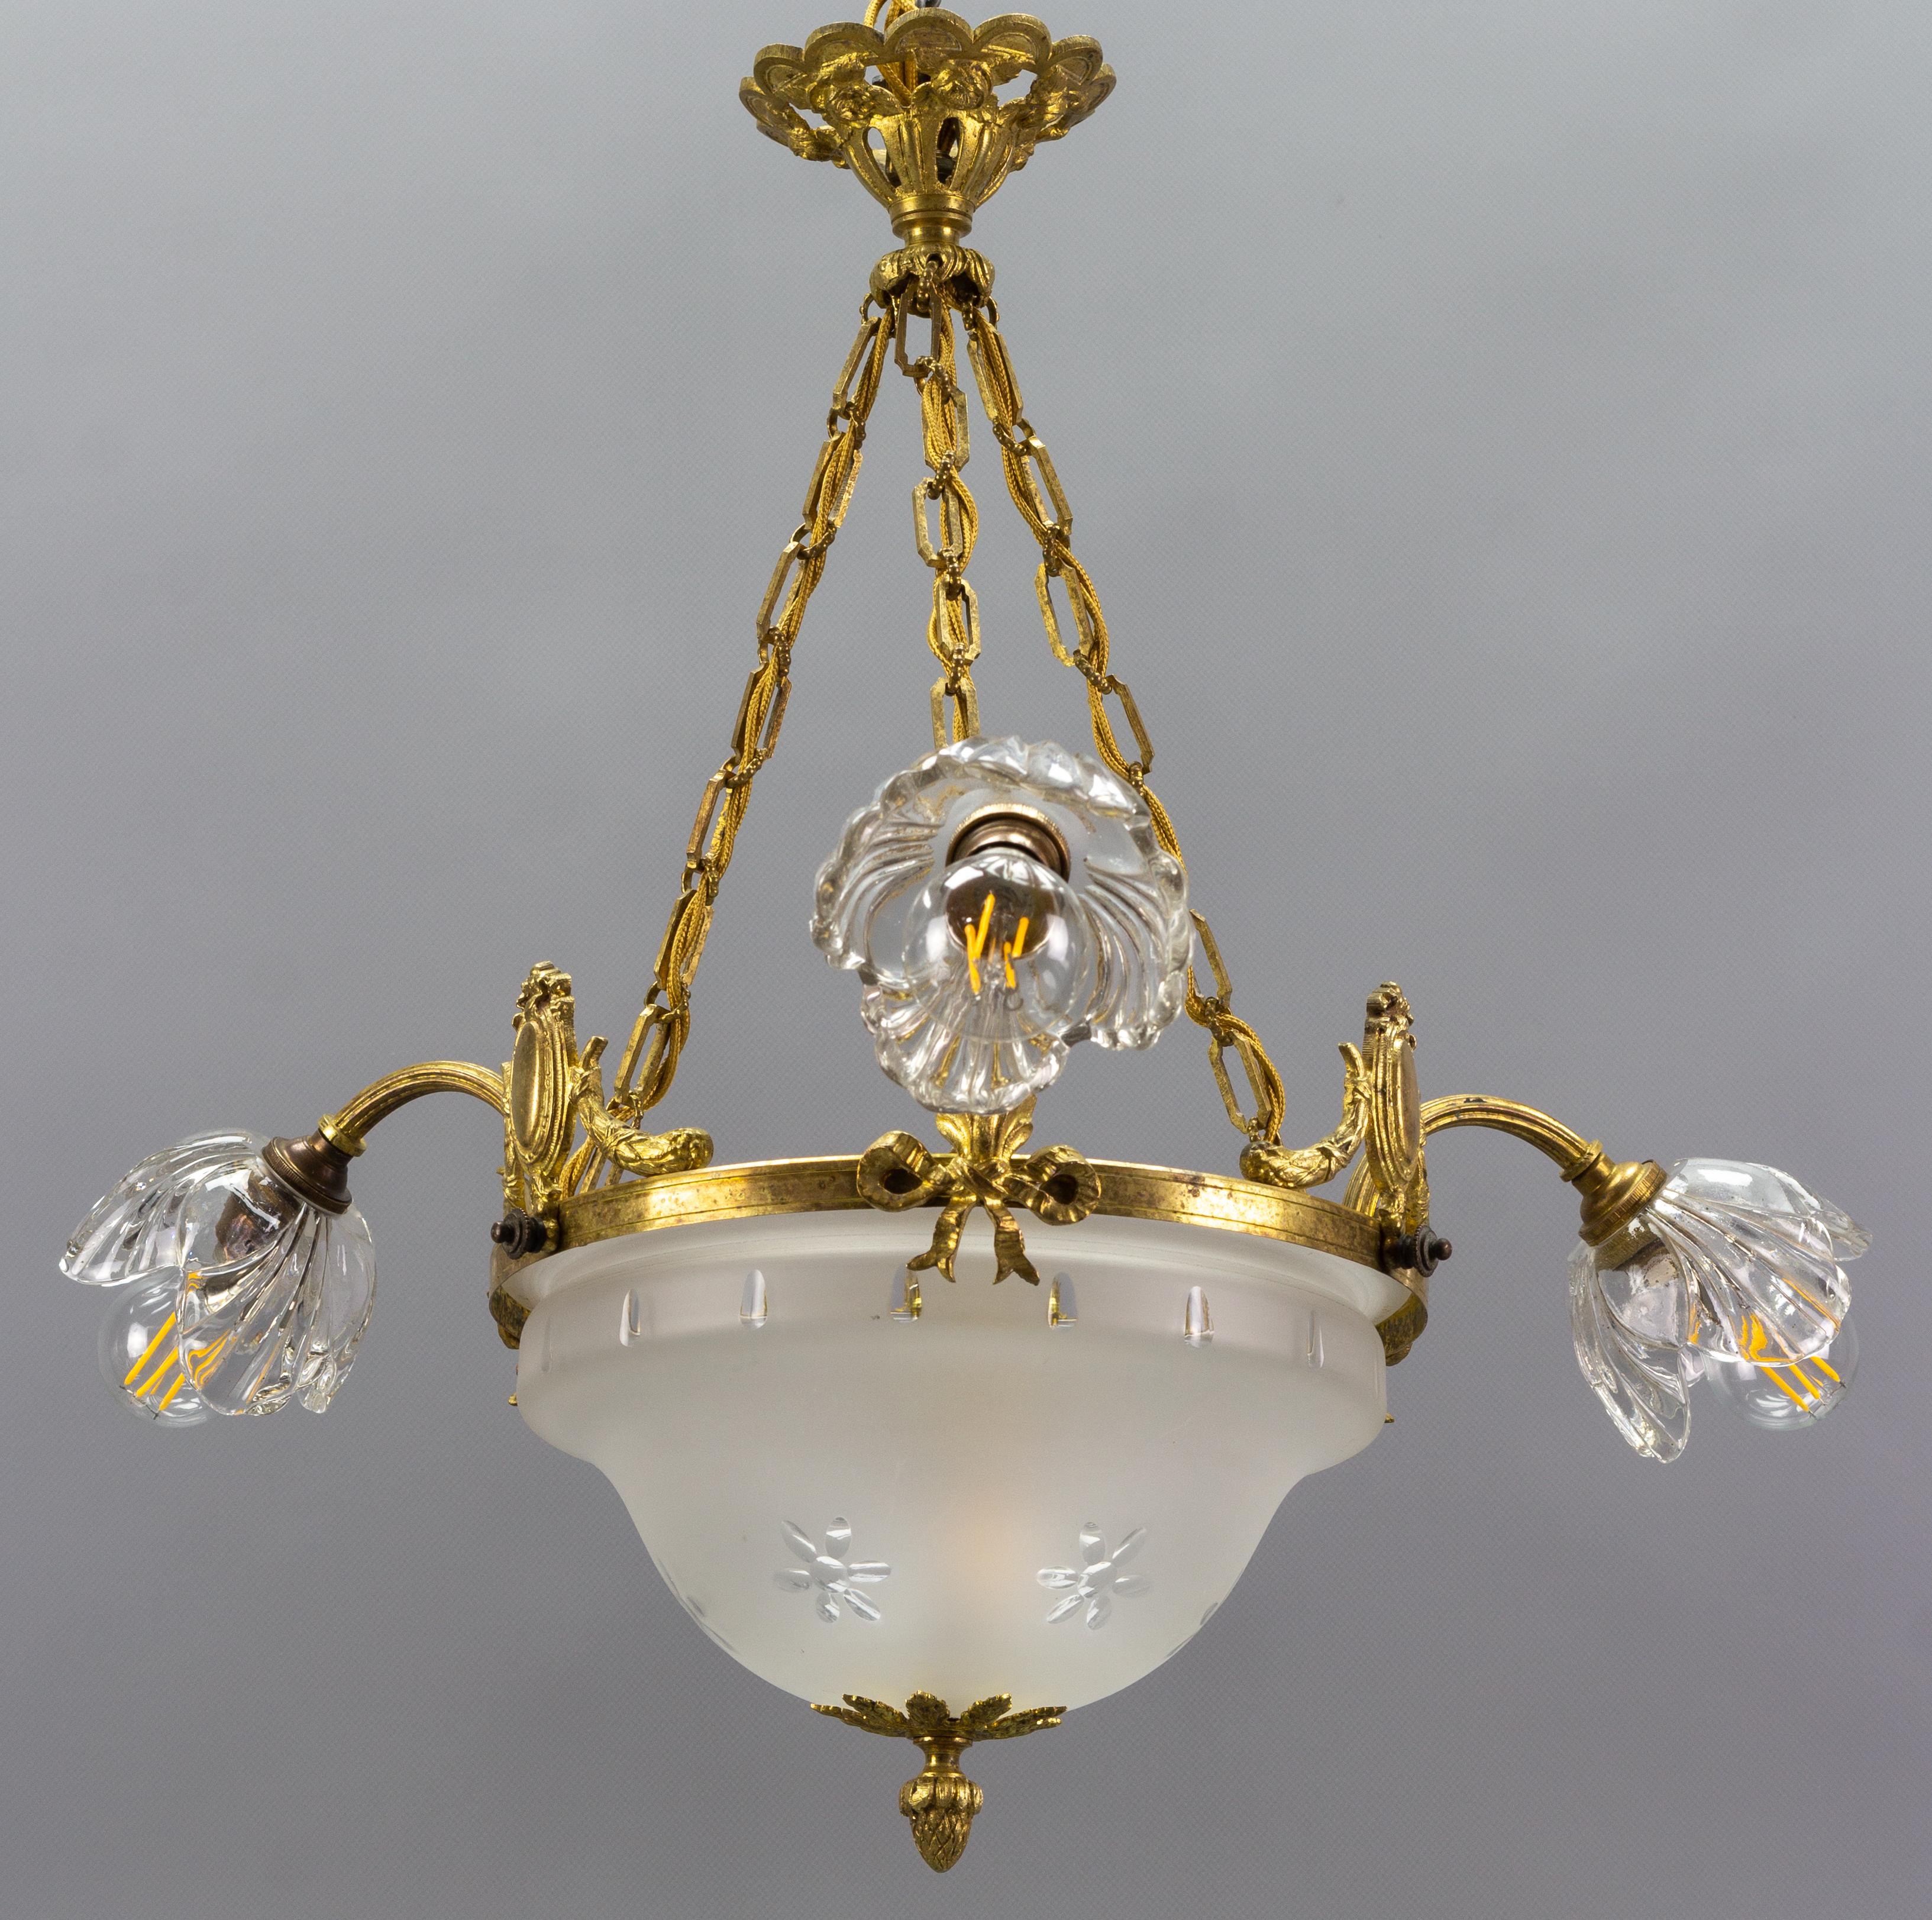 Französischer Kronleuchter im neoklassischen Stil aus vergoldeter Bronze und Glas mit vier Lichtern. Dieser schöne Kronleuchter hat drei Arme, die jeweils in einem blumenförmigen Lampenschirm aus klarem Glas enden, und einen schön geformten,